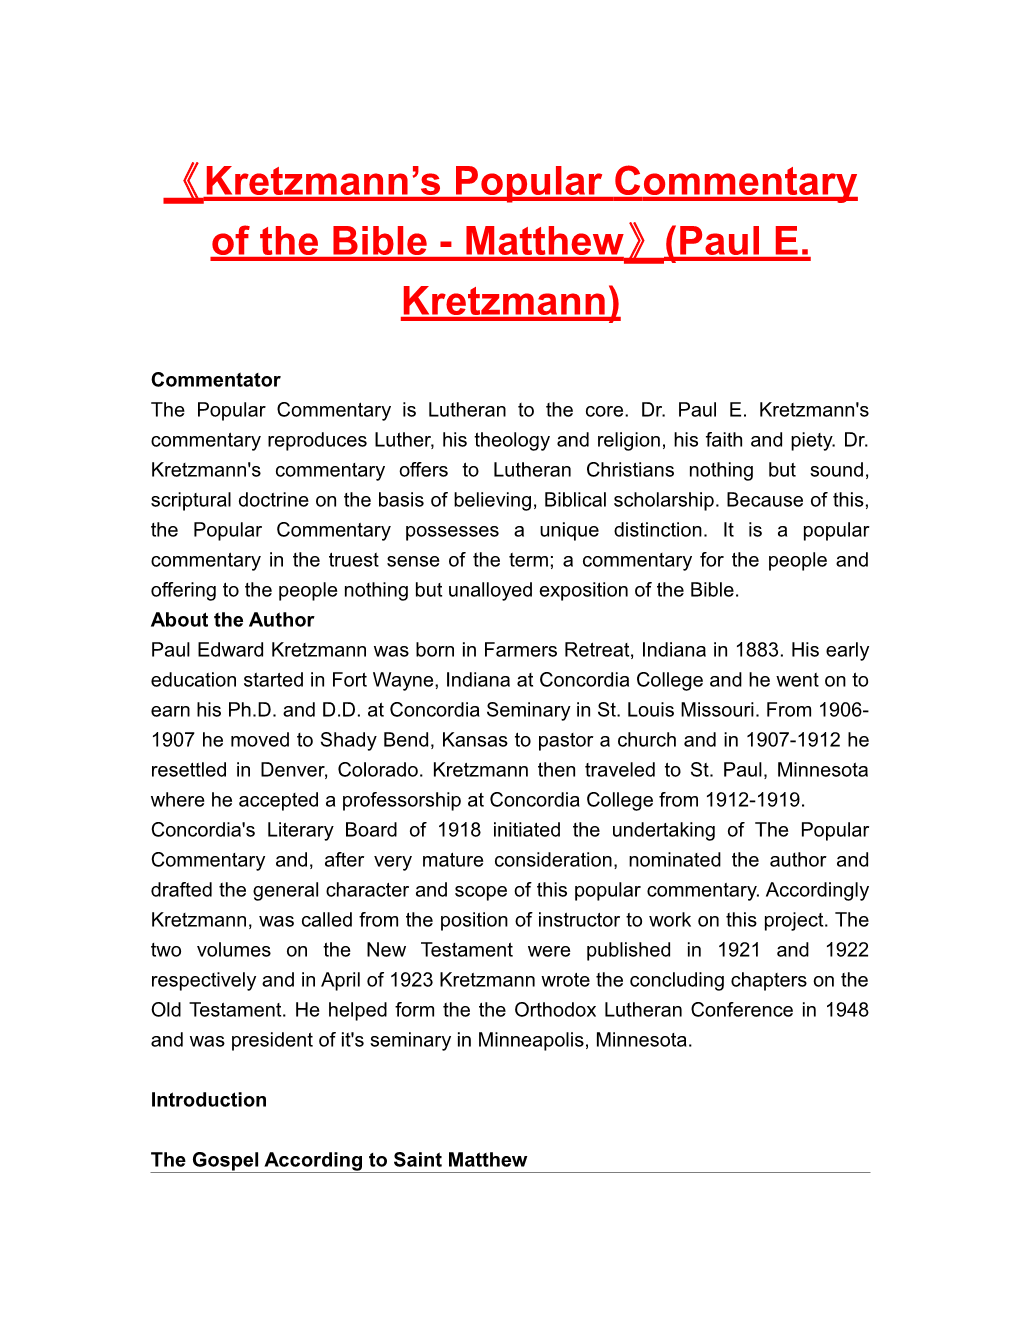 Kretzmann S Popularcommentary of the Bible-Matthew (Paul E. Kretzmann)